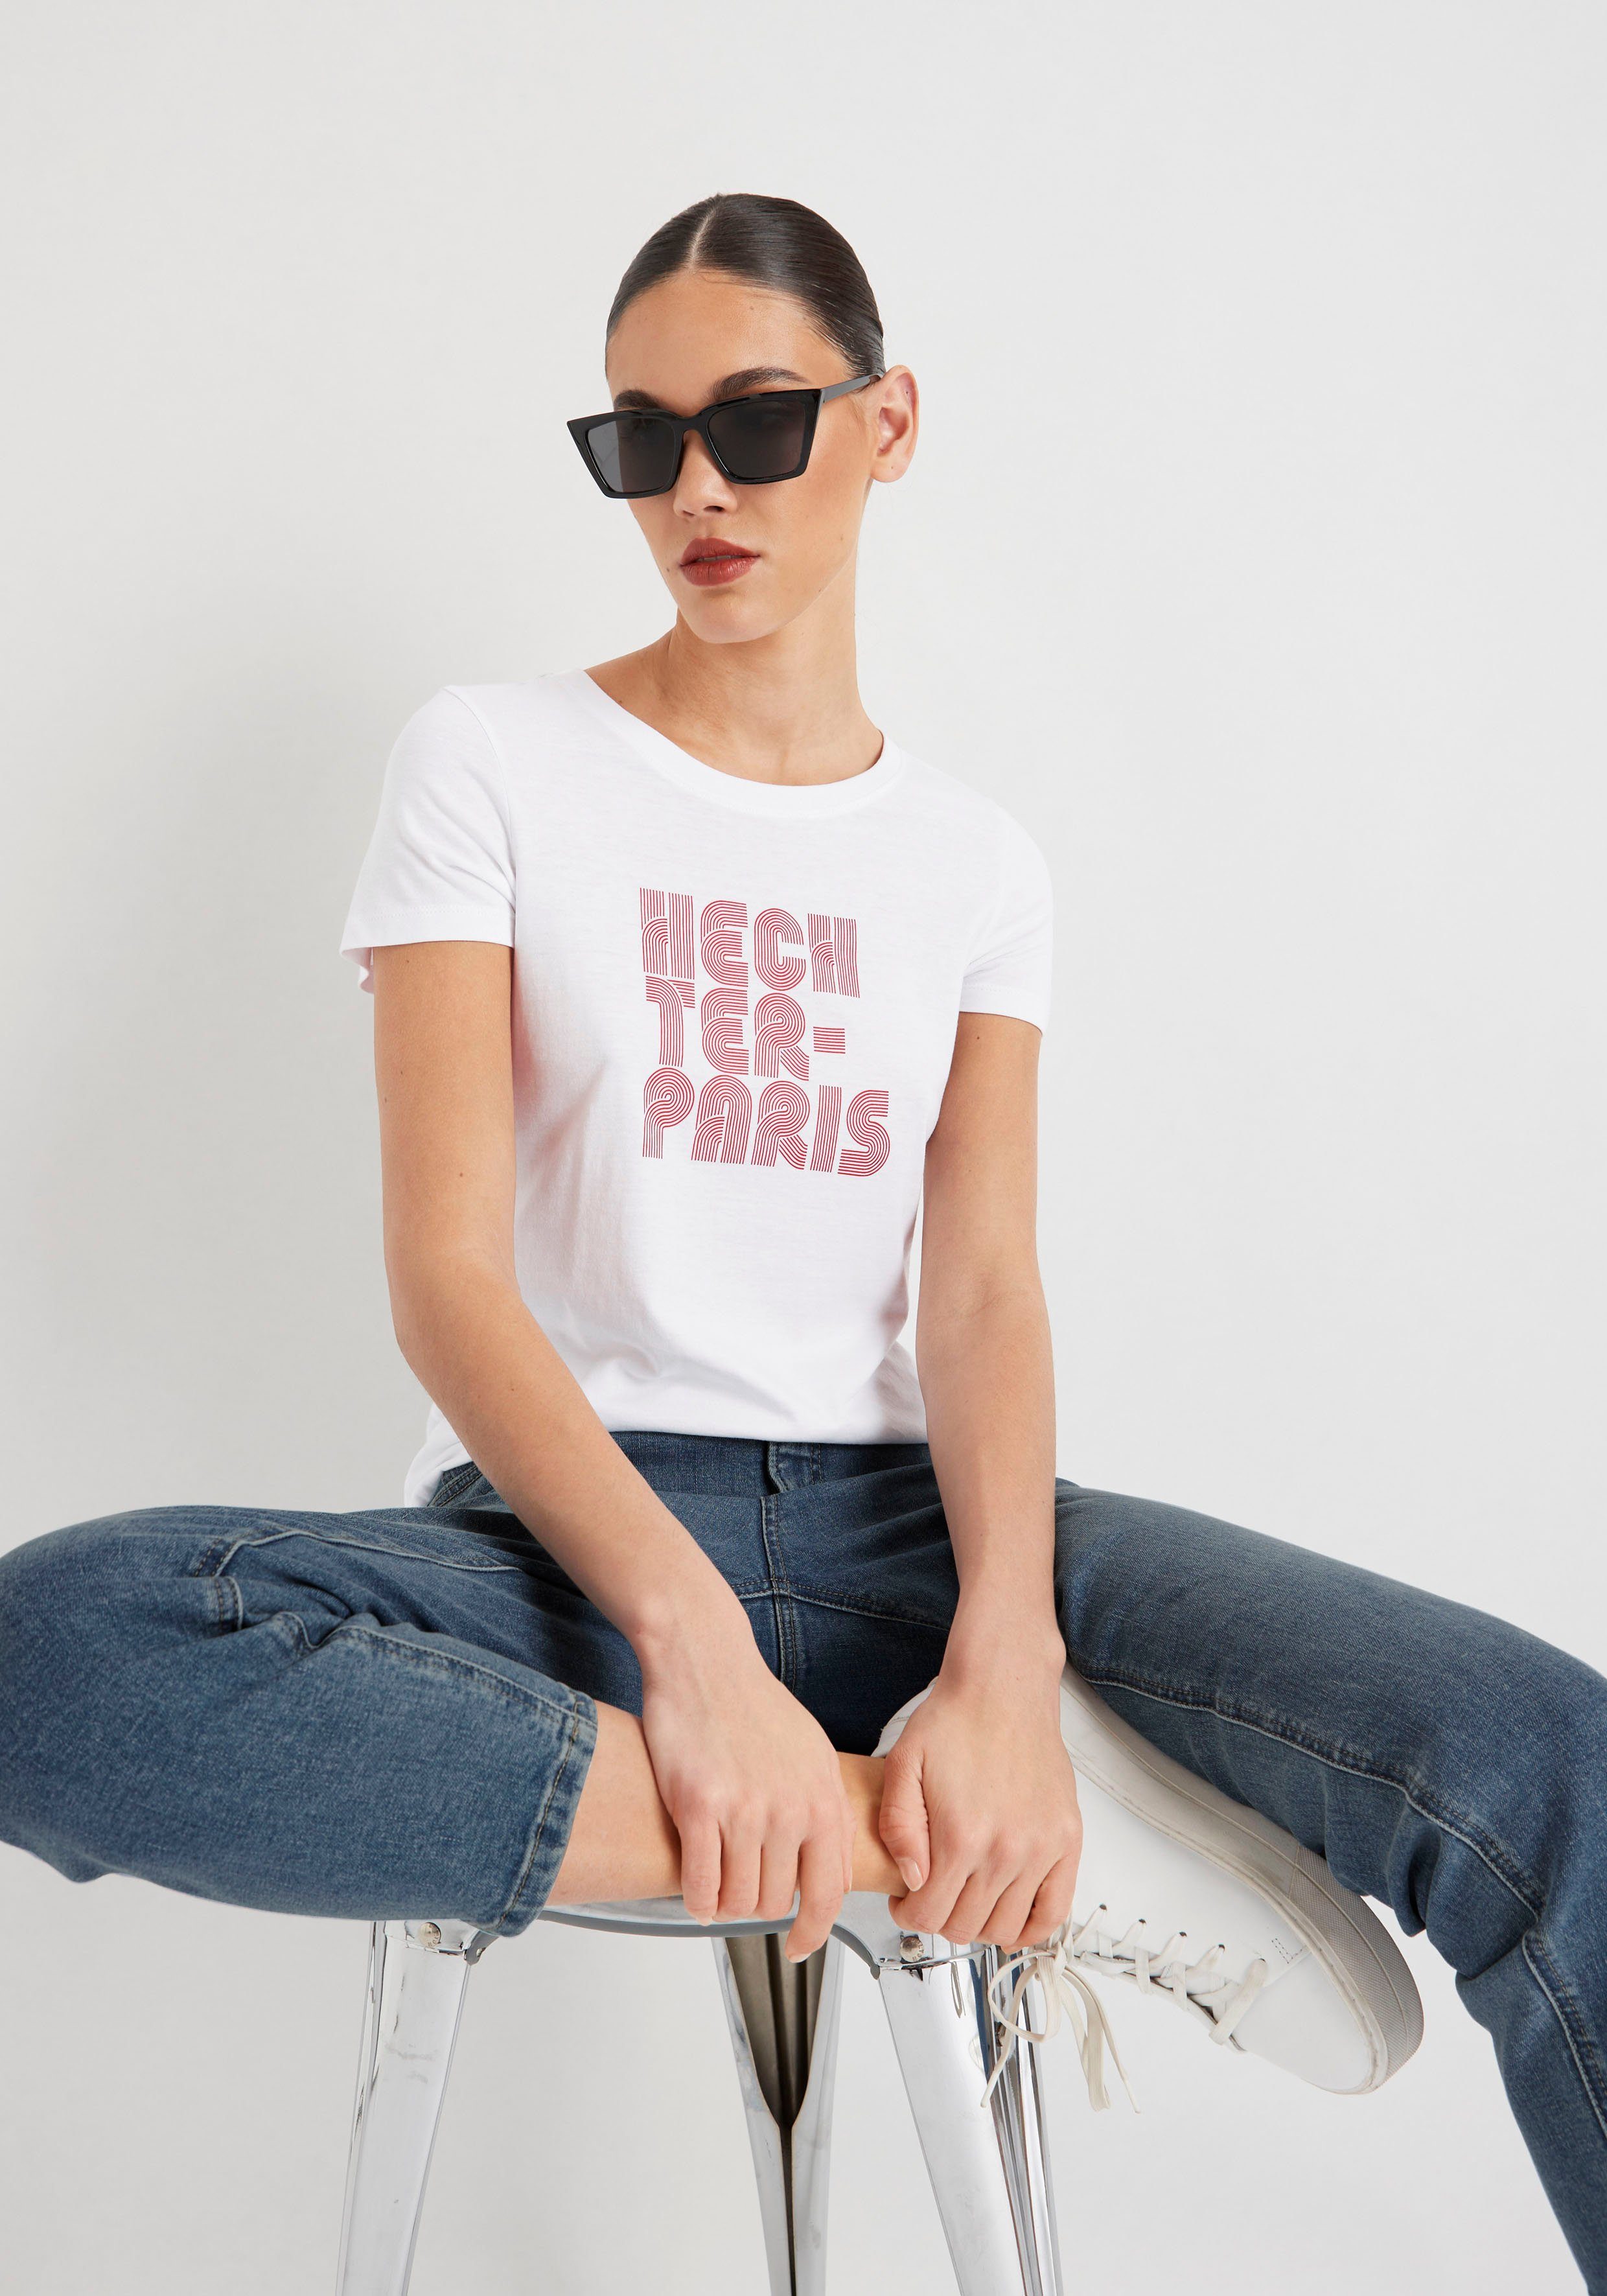 T-Shirt HECHTER Druck weiß-rot PARIS mit